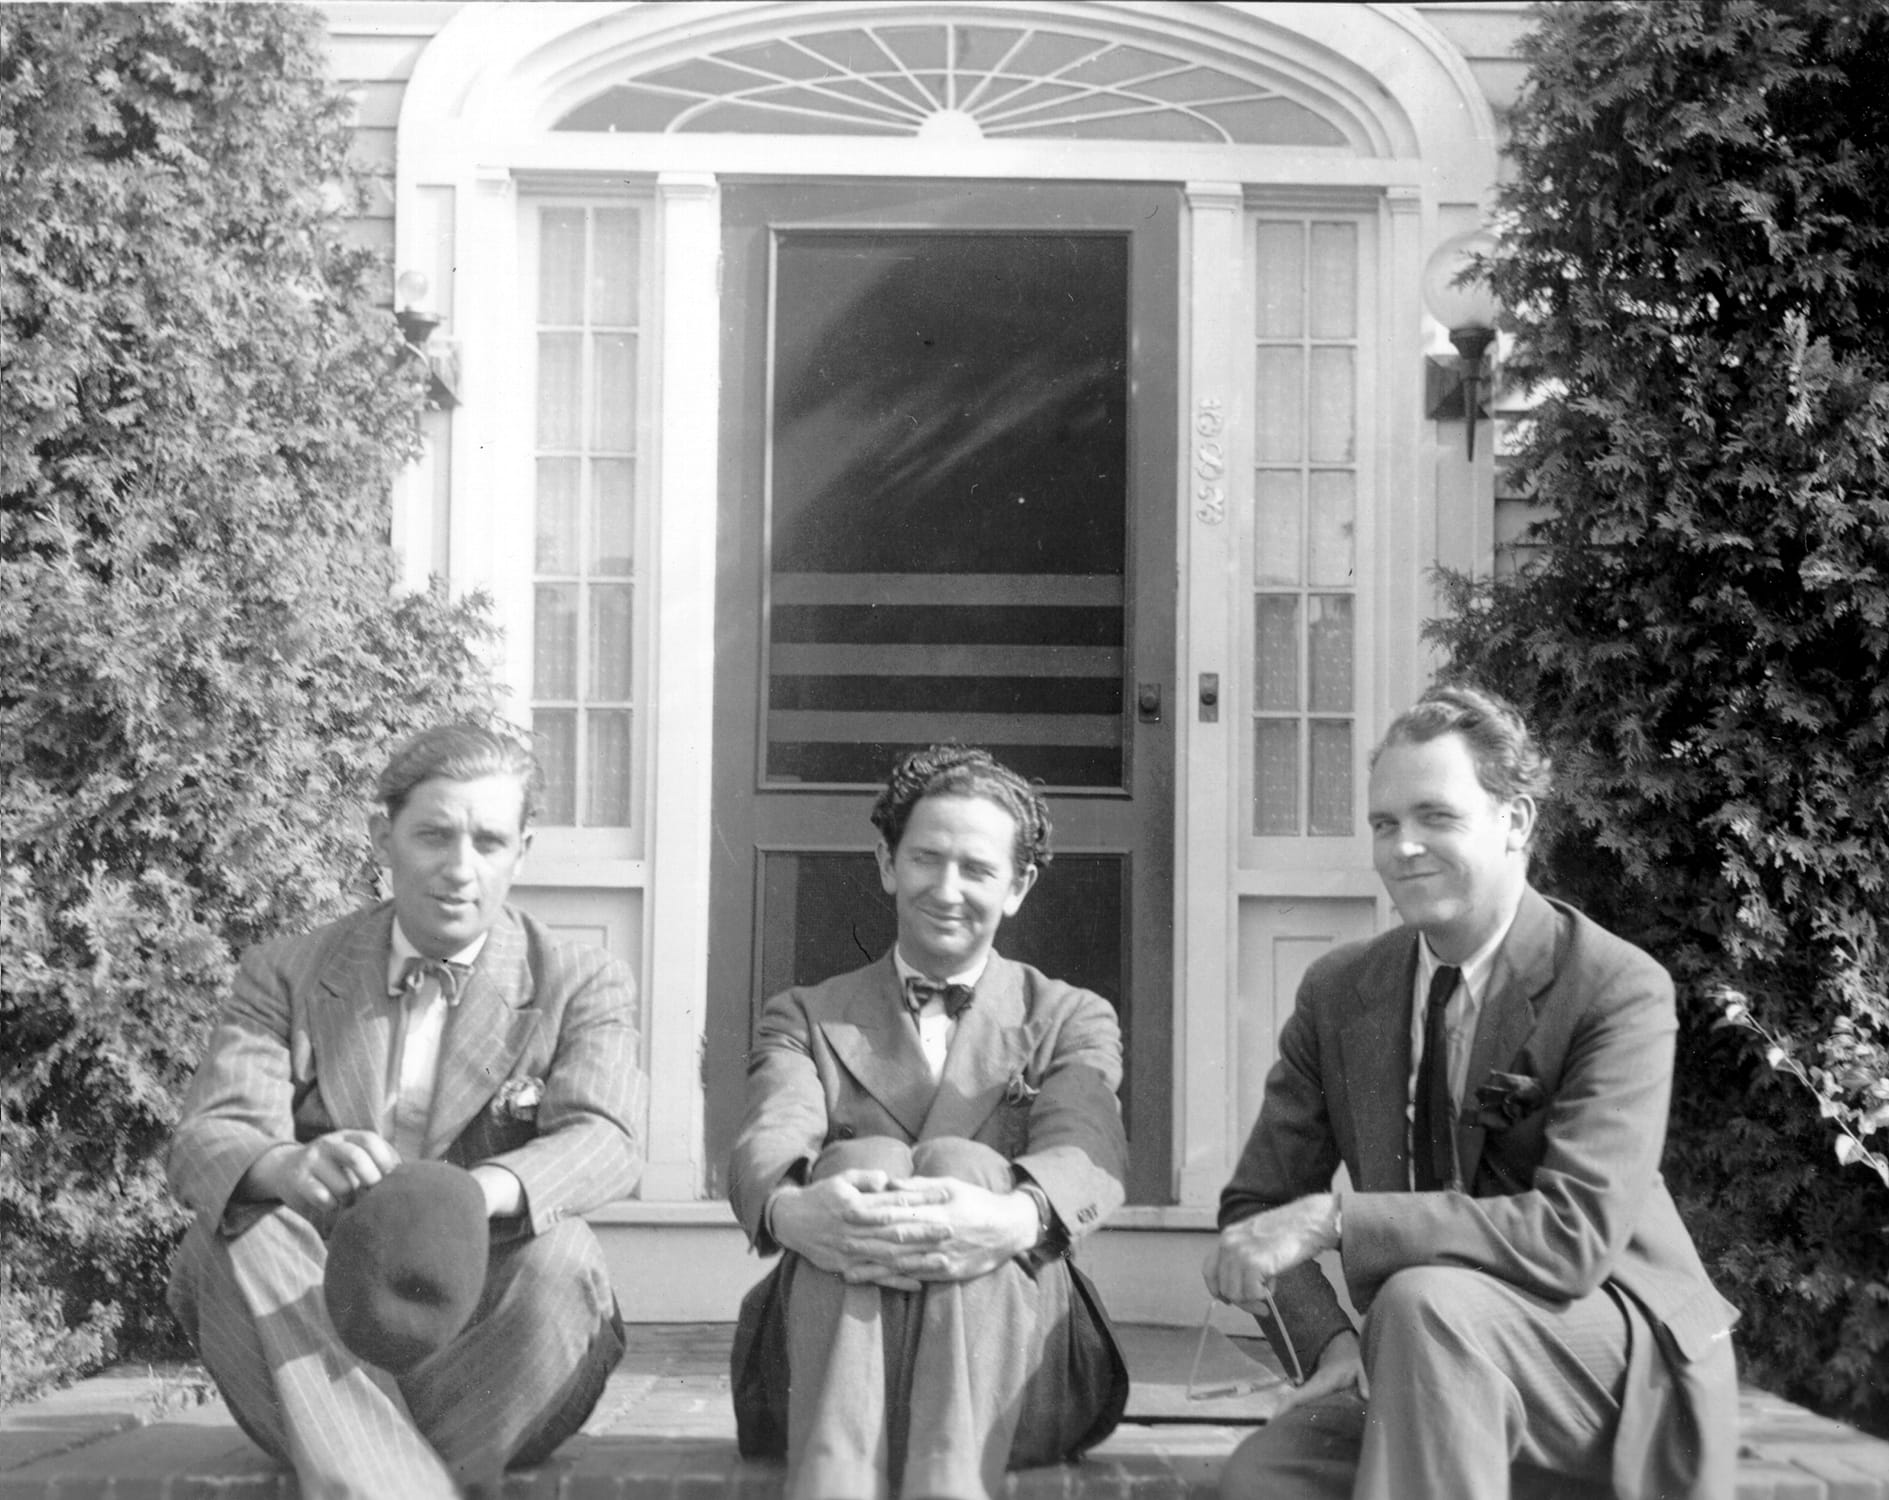 Harry Burnett, Forman Brown, and Richard â€œRoddyâ€ Brandon pose in front of the Turnabout Theater